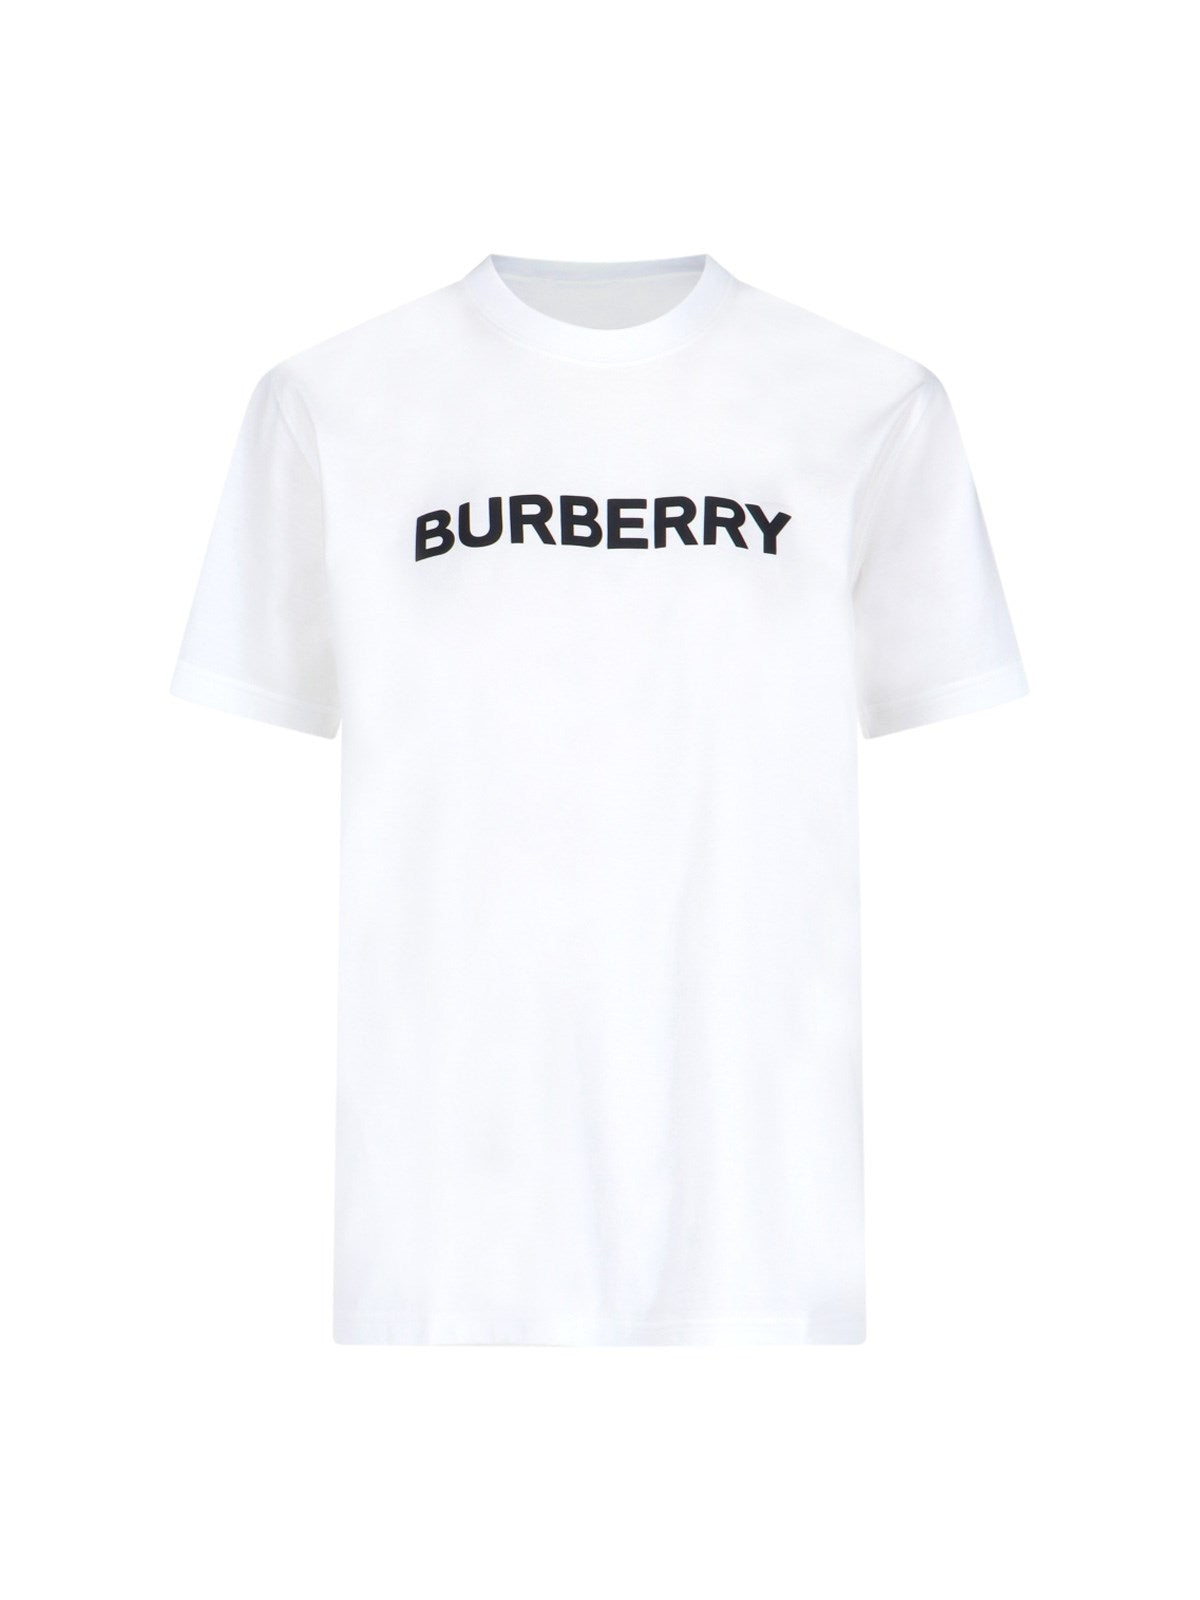 burberry t-shirt logo-t-shirt-Burberry-t-shirt logo burberry, in cotone bianco, girocollo, maniche corte, stampa logo nero fronte, orlo dritto. codice prodotto 8080325a1464 composizione: 100% cotone dimensioni/vestibilità: regolare made in: italia - Dresso